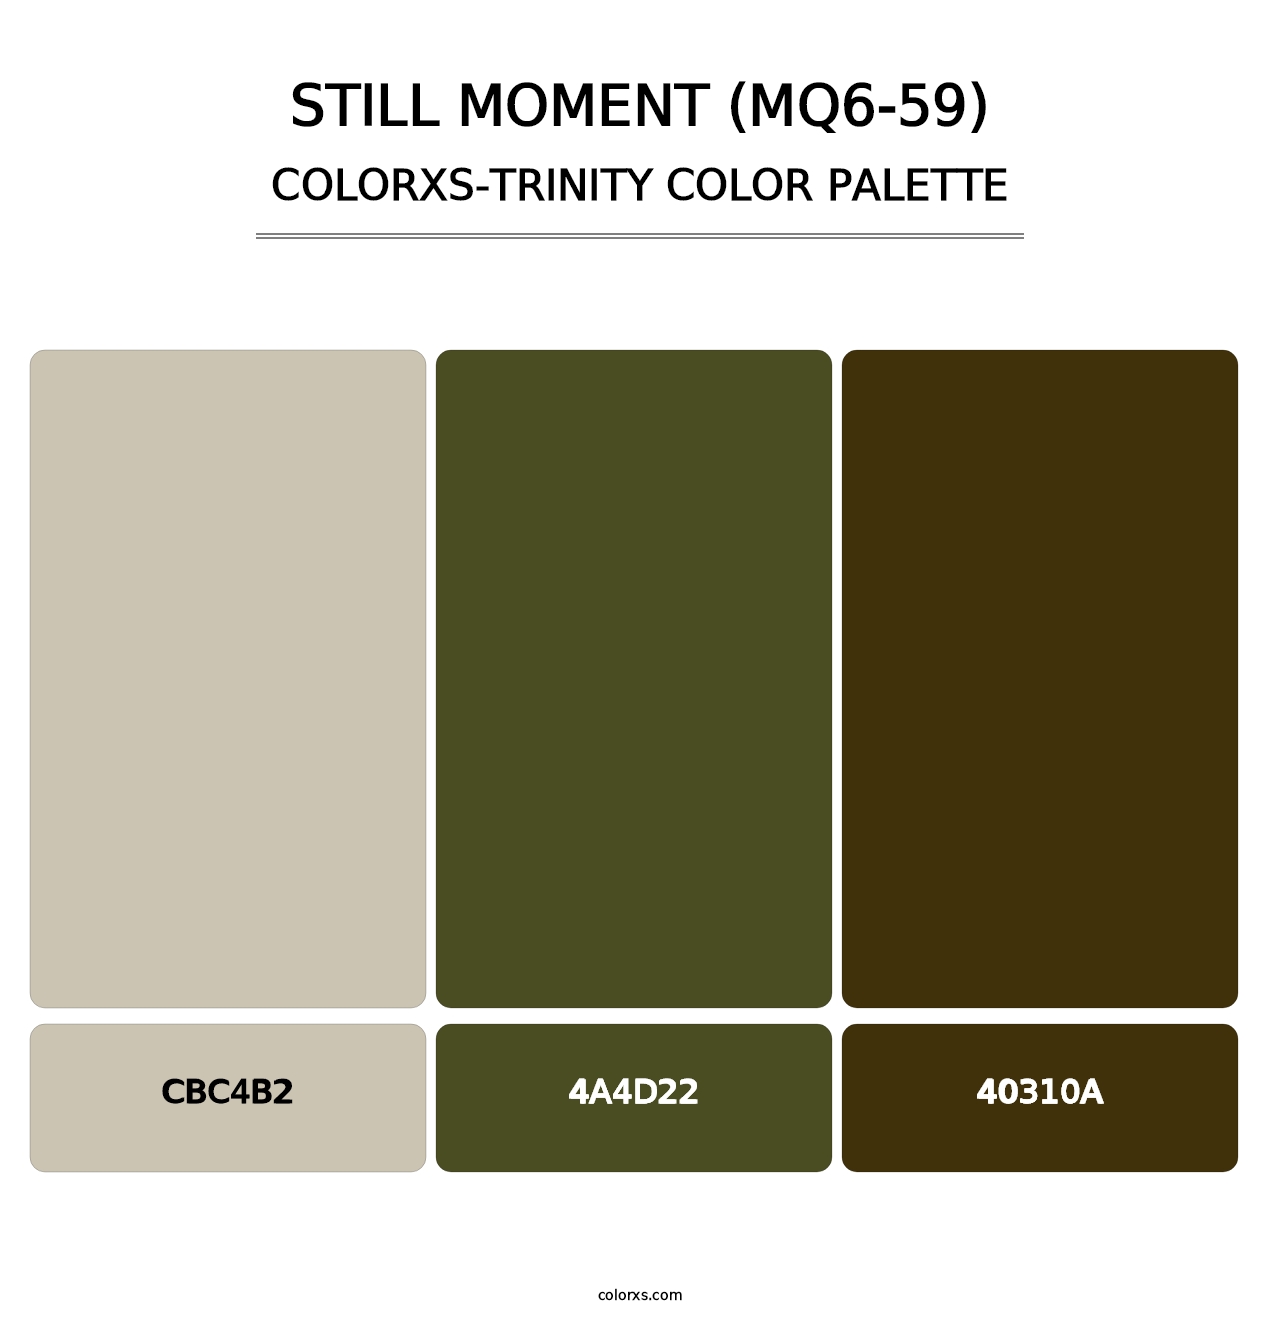 Still Moment (MQ6-59) - Colorxs Trinity Palette